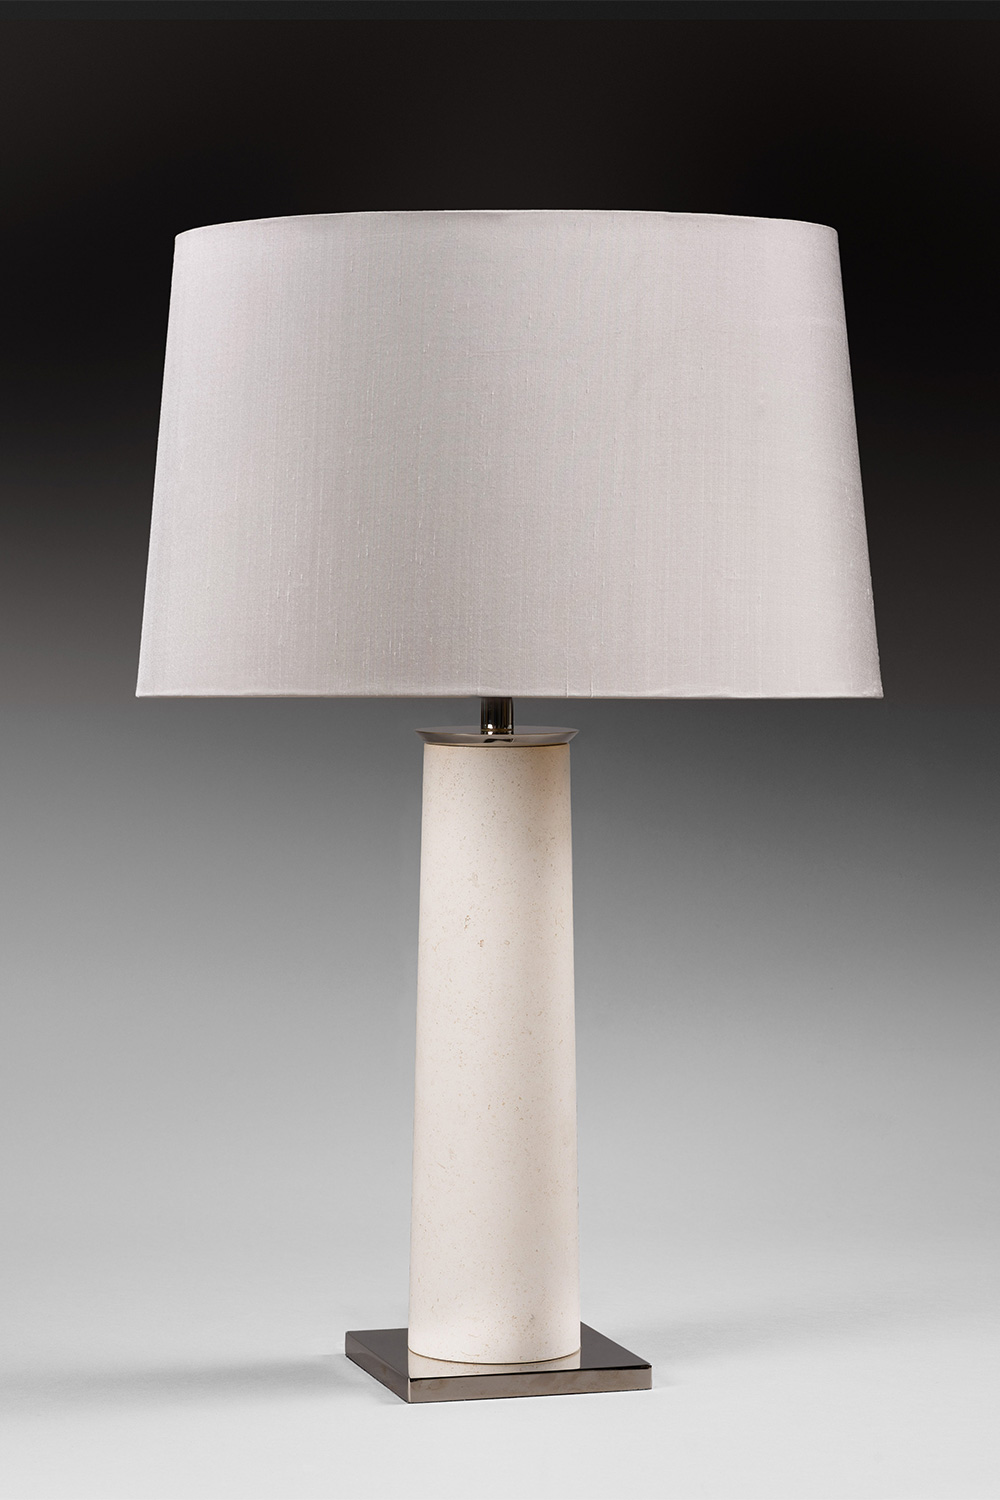 Colonne “Nickel” lamp